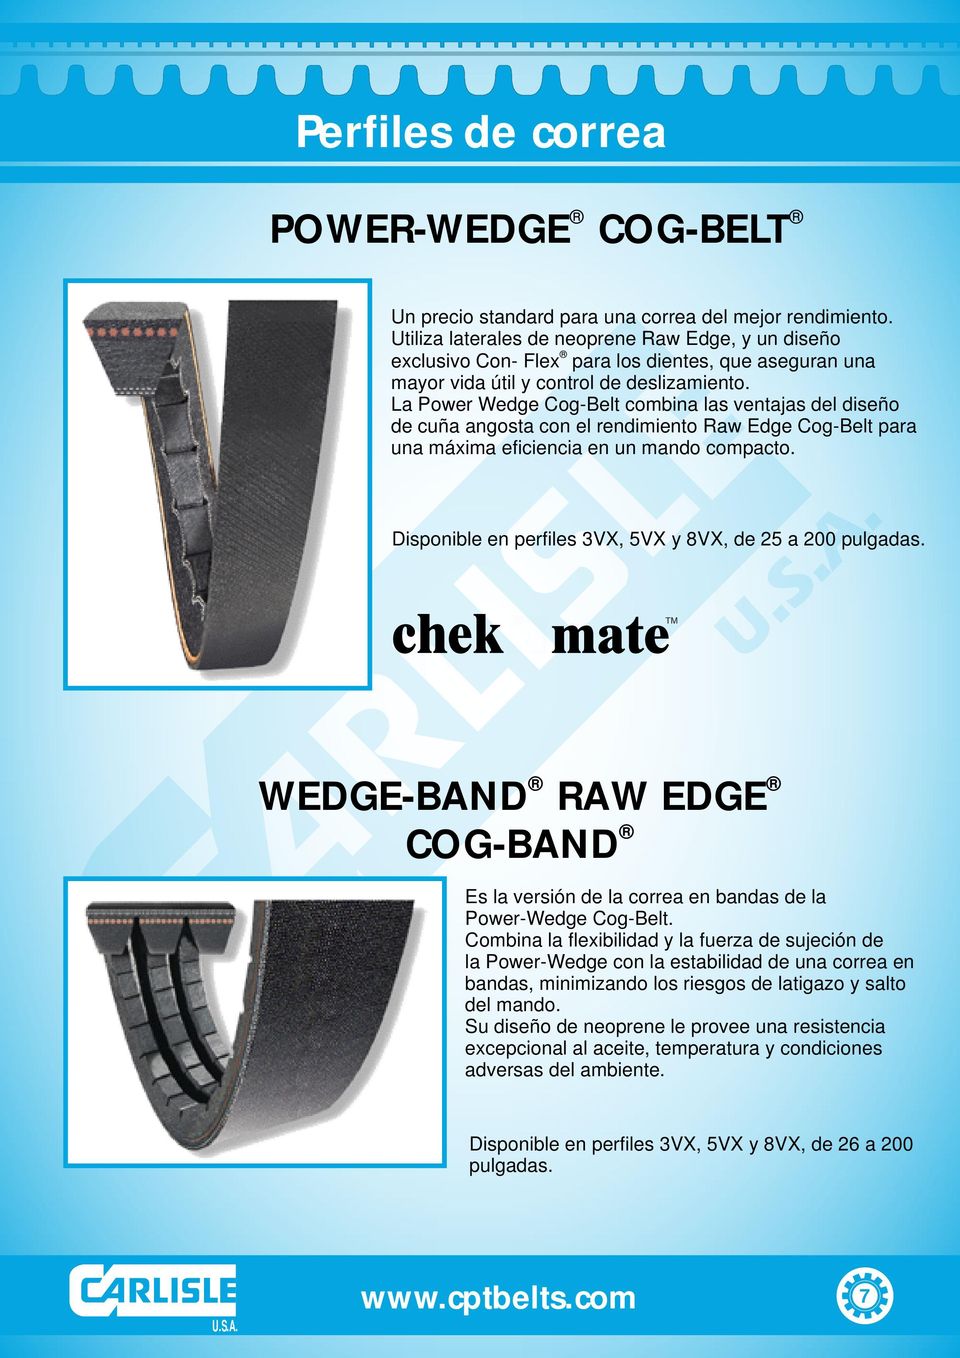 La Power Wedge Cog-Belt combina las ventajas del diseño de cuña angosta con el rendimiento Raw Edge Cog-Belt para una máxima eficiencia en un mando compacto.